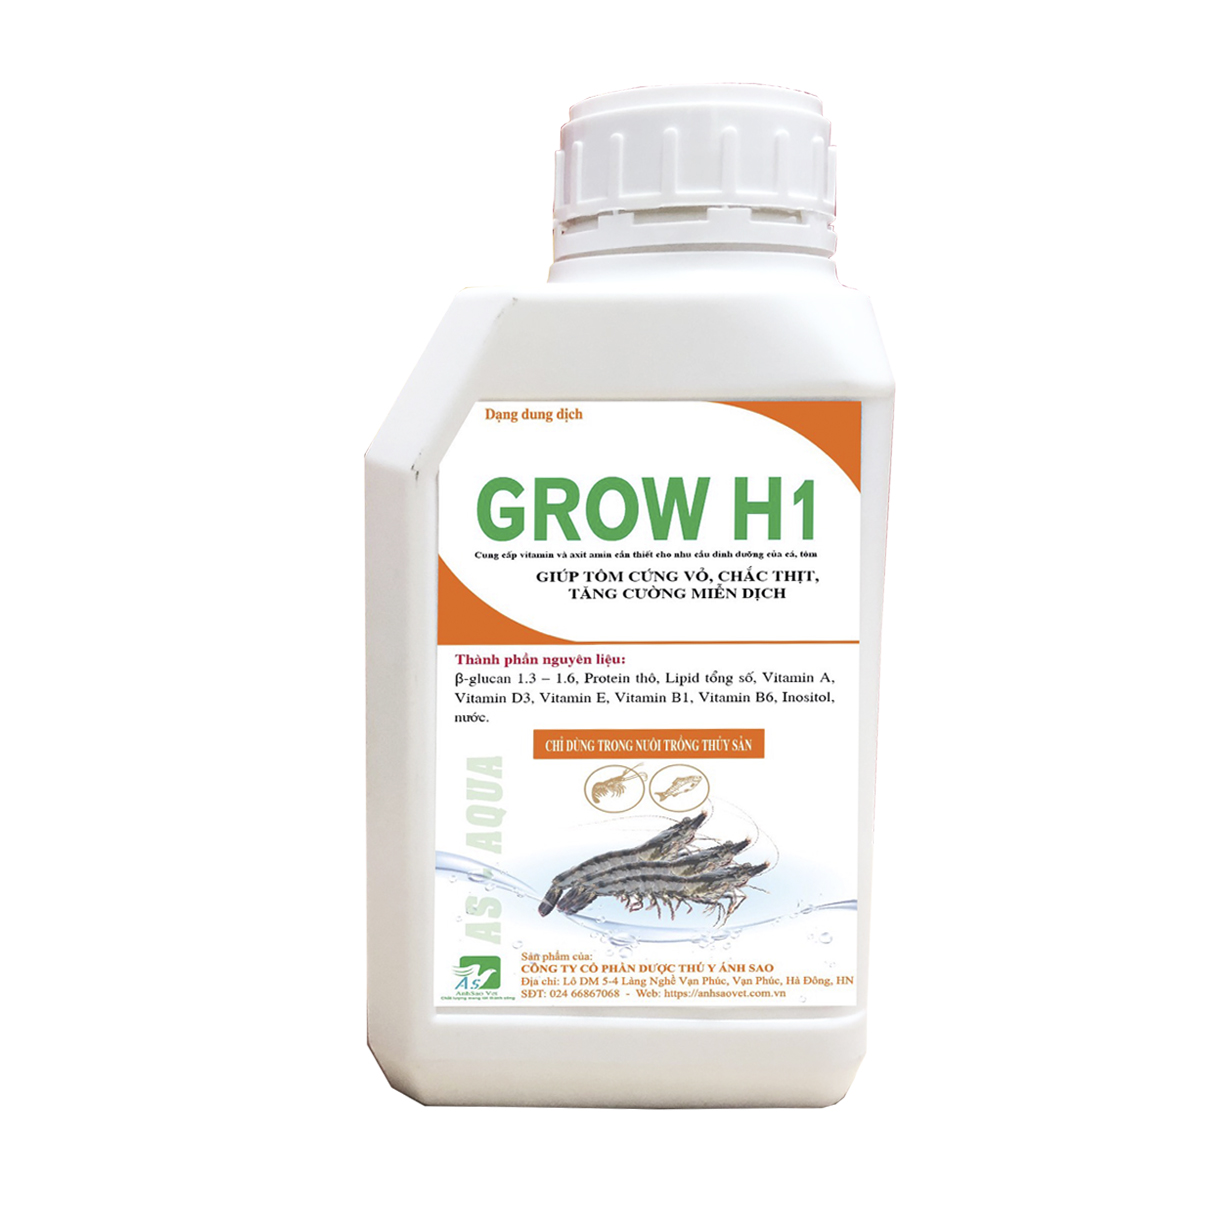 GROW H1